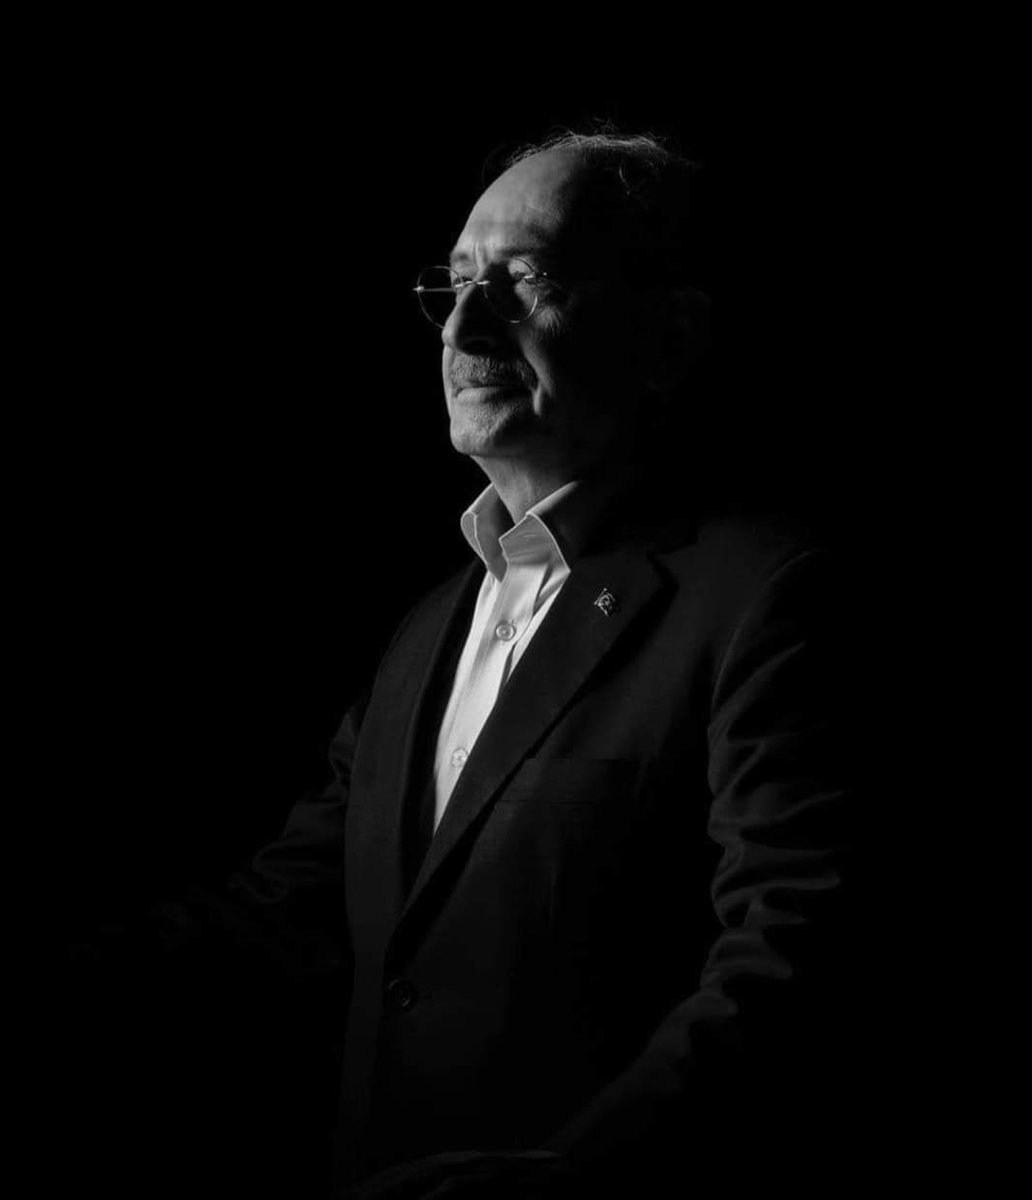 'Karanlıkları mutlaka  aydınlığa  çıkaracağız'

#KemalKılıçdaroğlu 
@kilicdarogluk
🙏

22 Nisan 2022